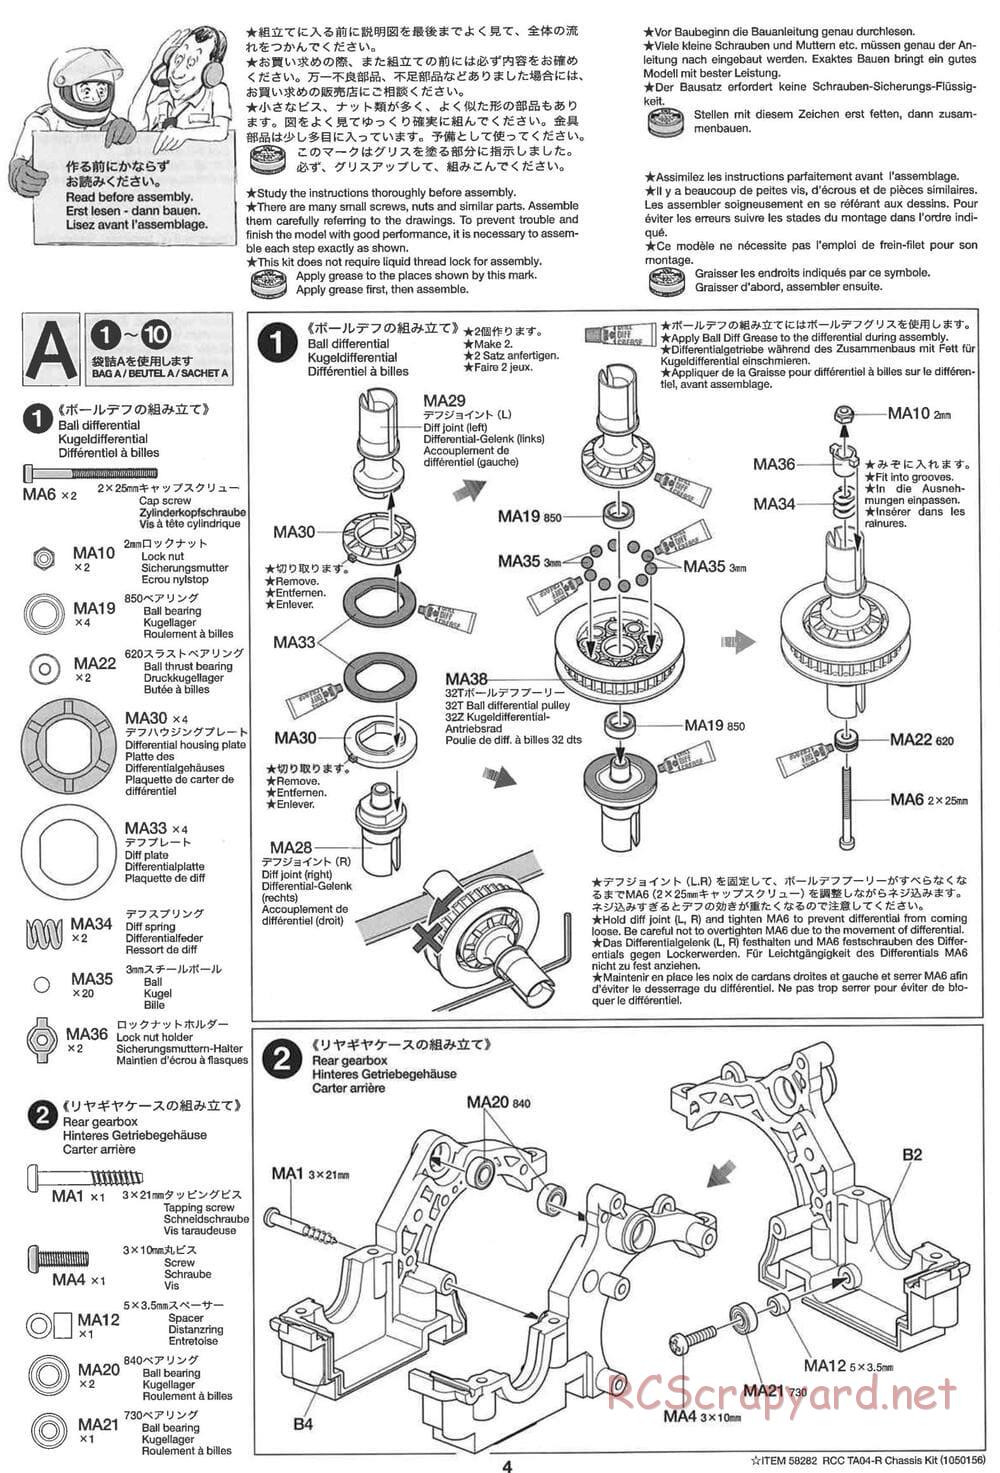 Tamiya - TA-04R Chassis - Manual - Page 4